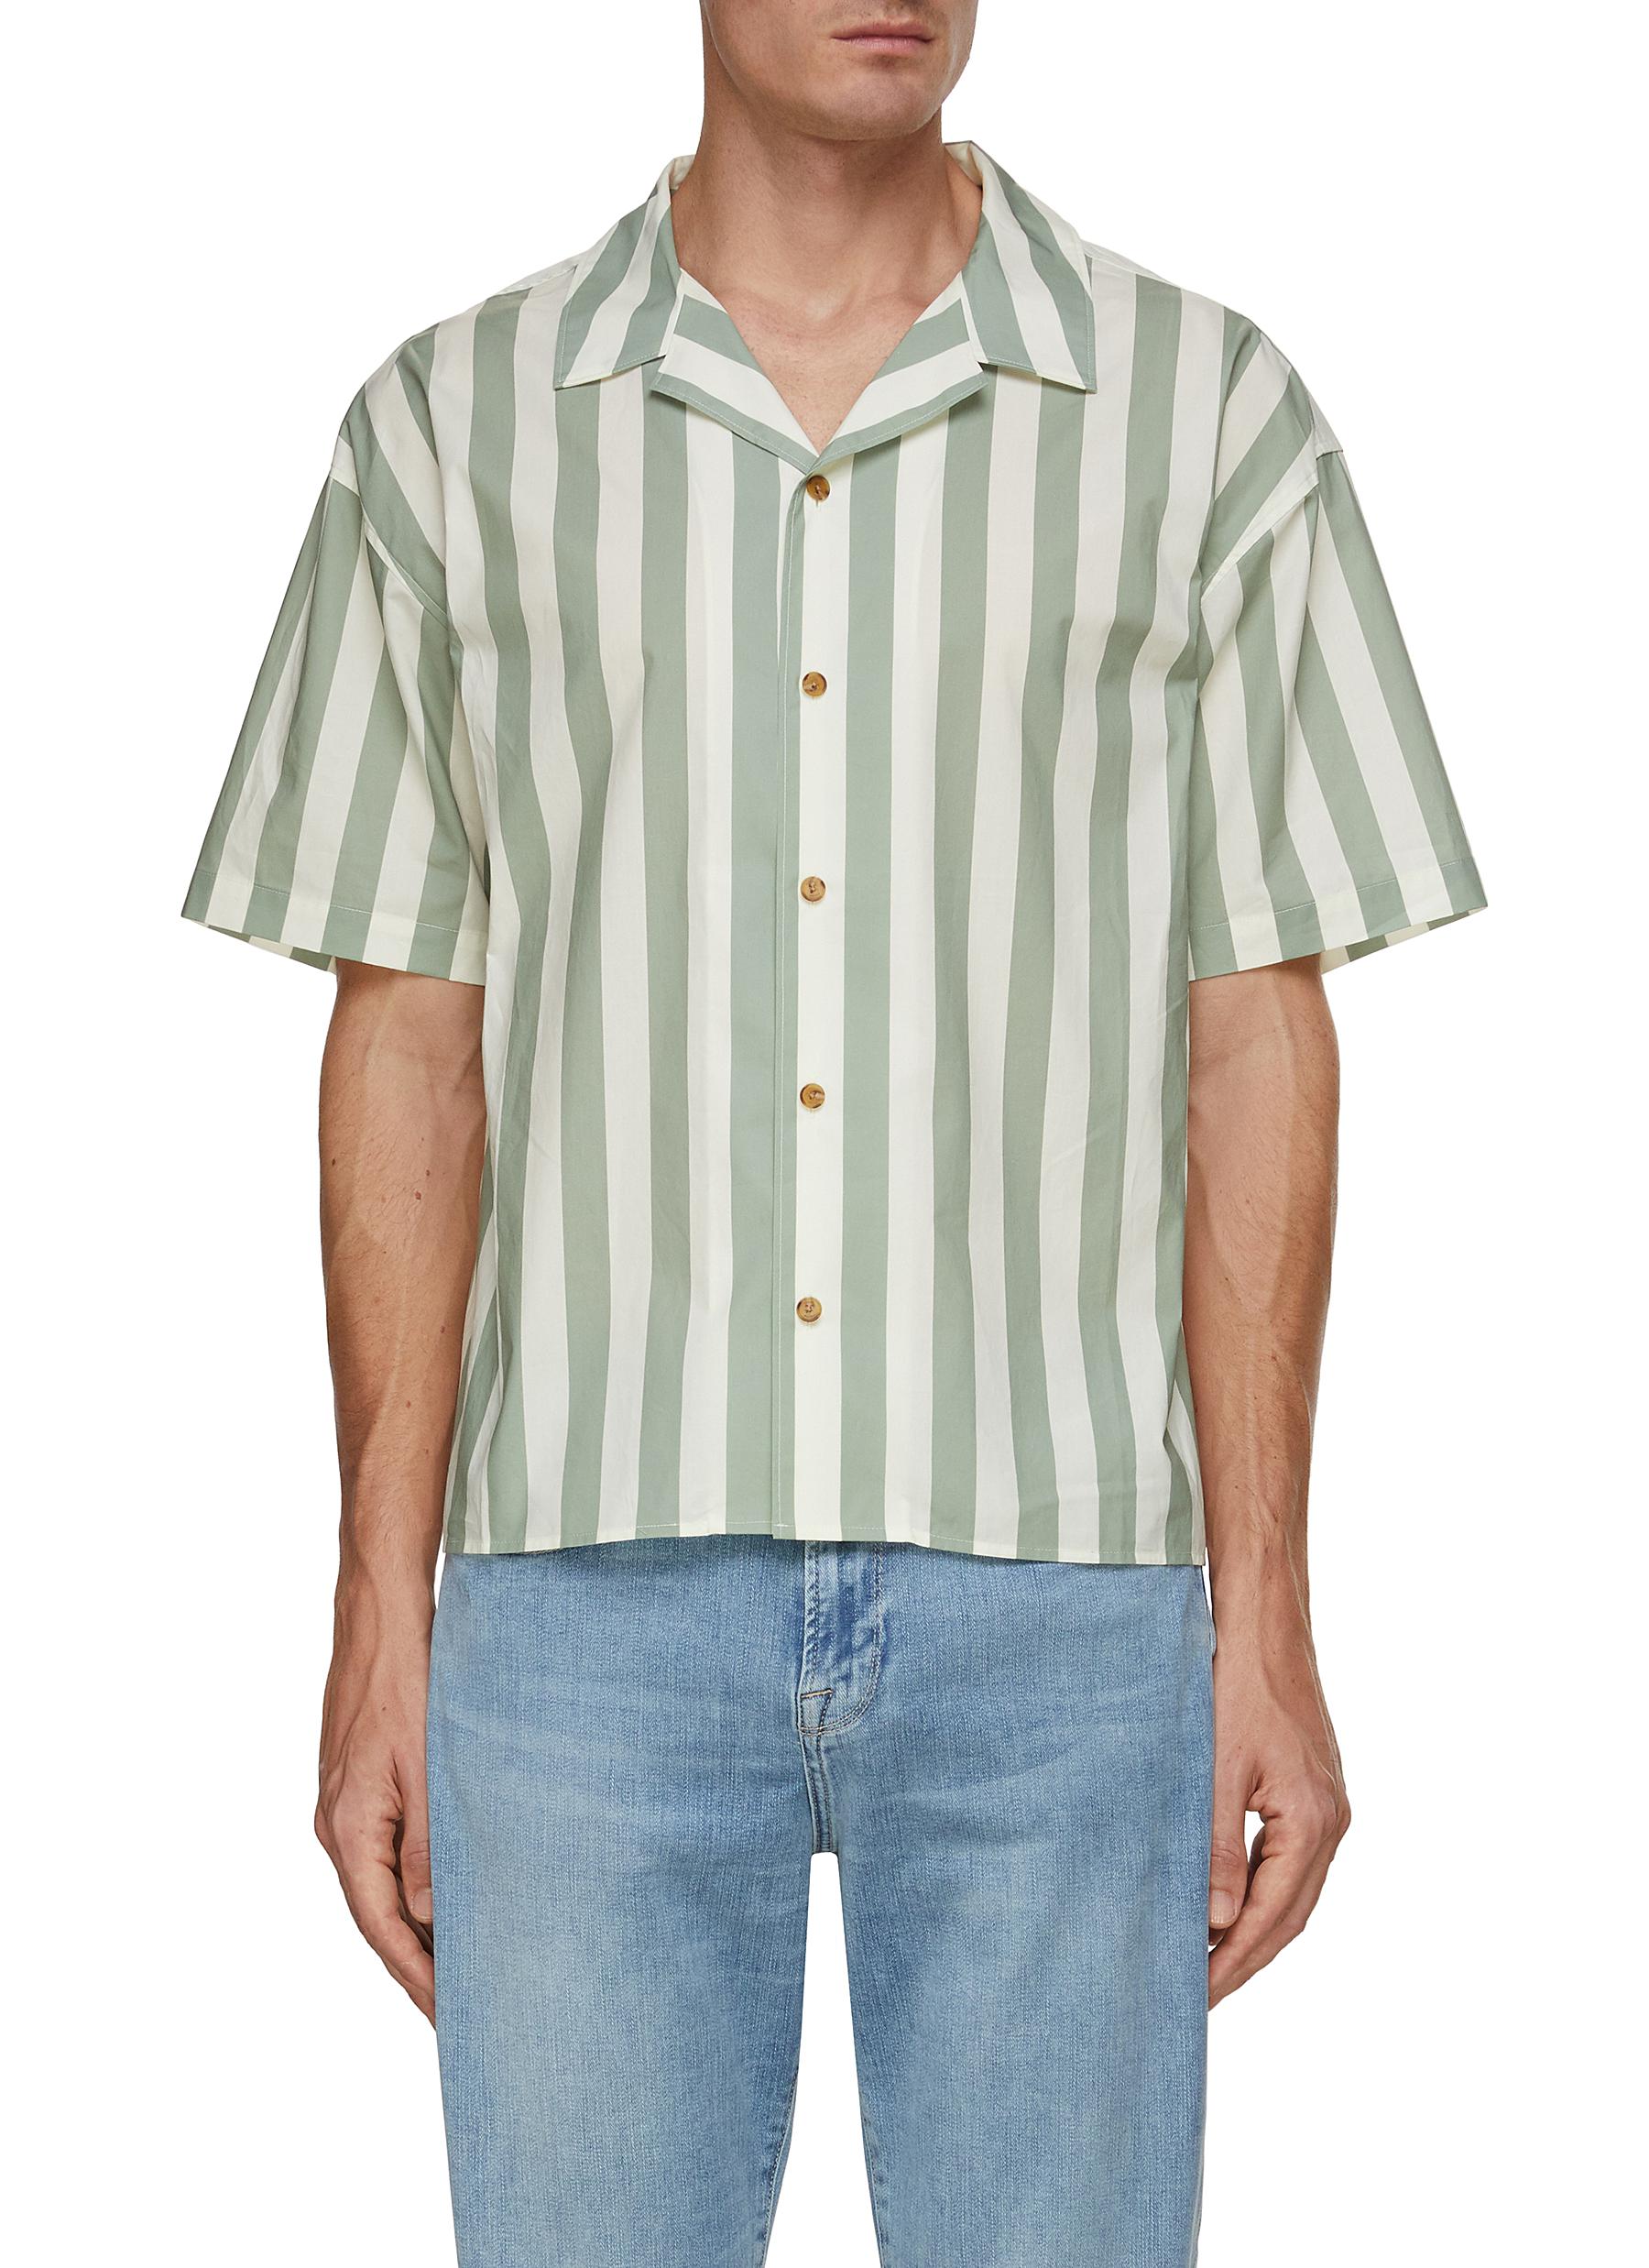 FRAME DENIM Stripe Printed Shirt